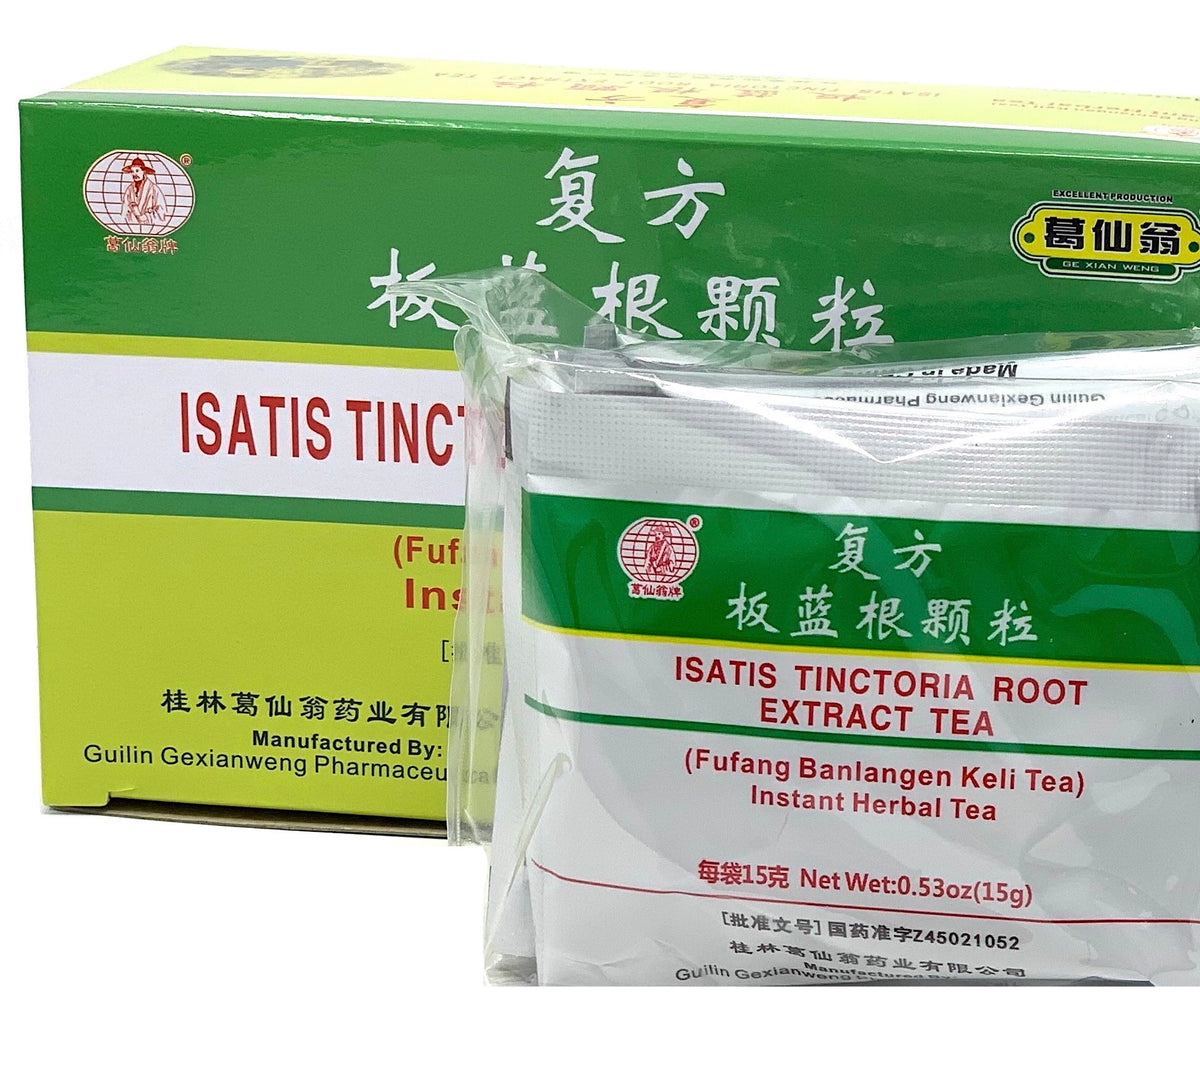 Isatis Tinctoria Root Extract Tea (FuFang BanLanGen KeLi Tea)